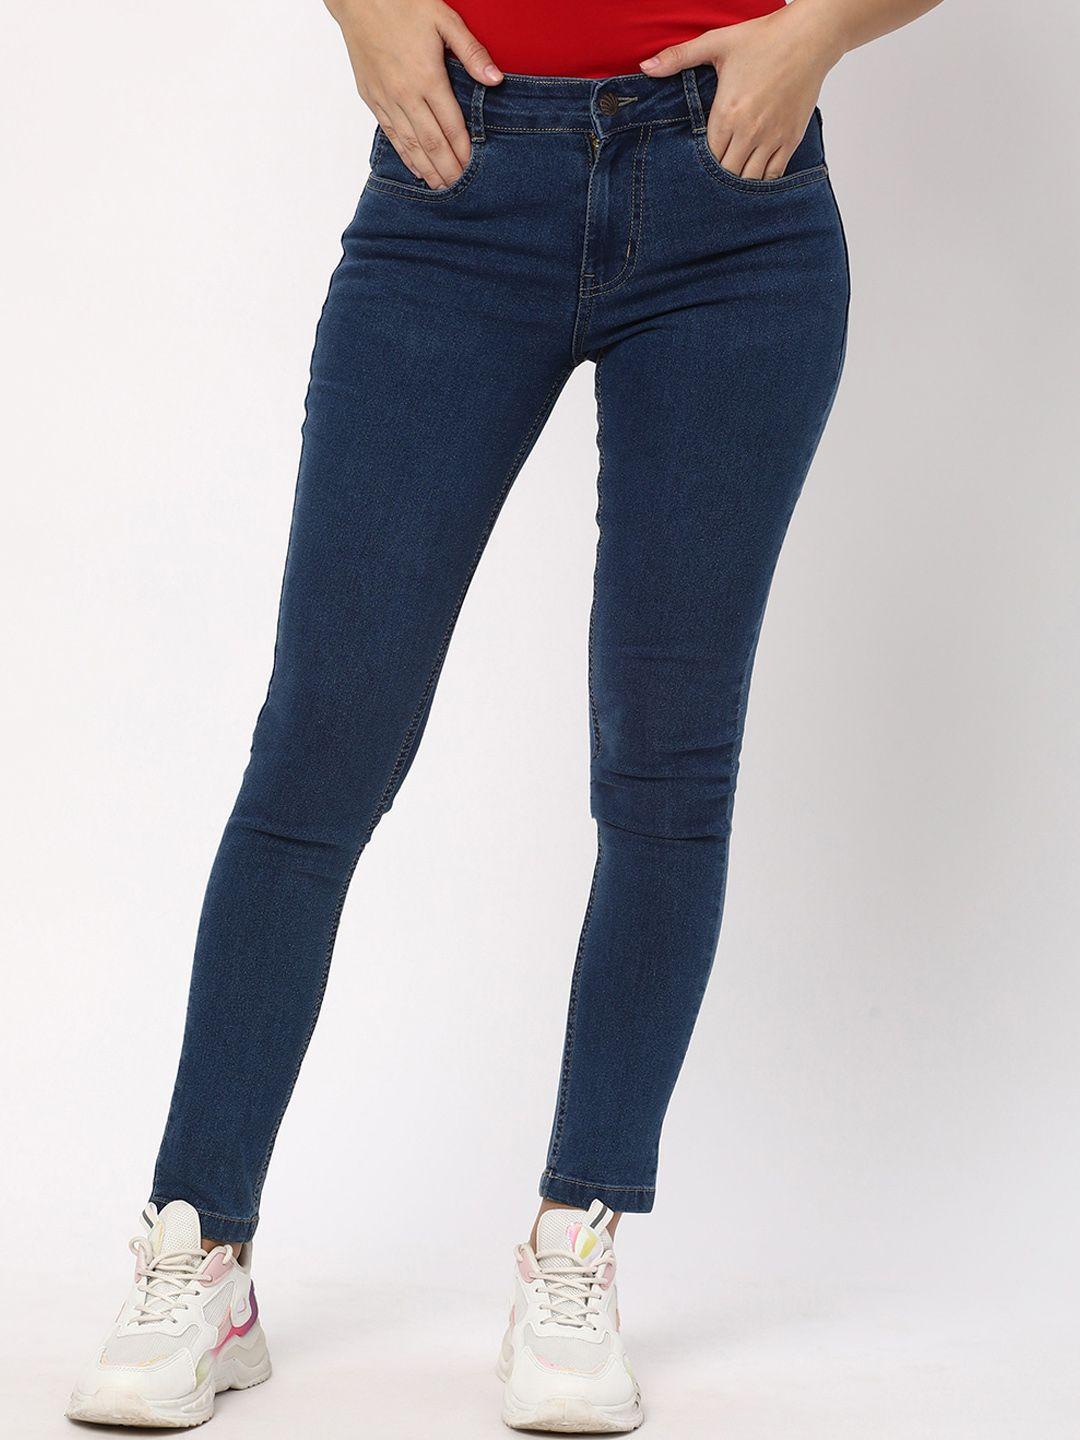 r&b women blue skinny fit jeans